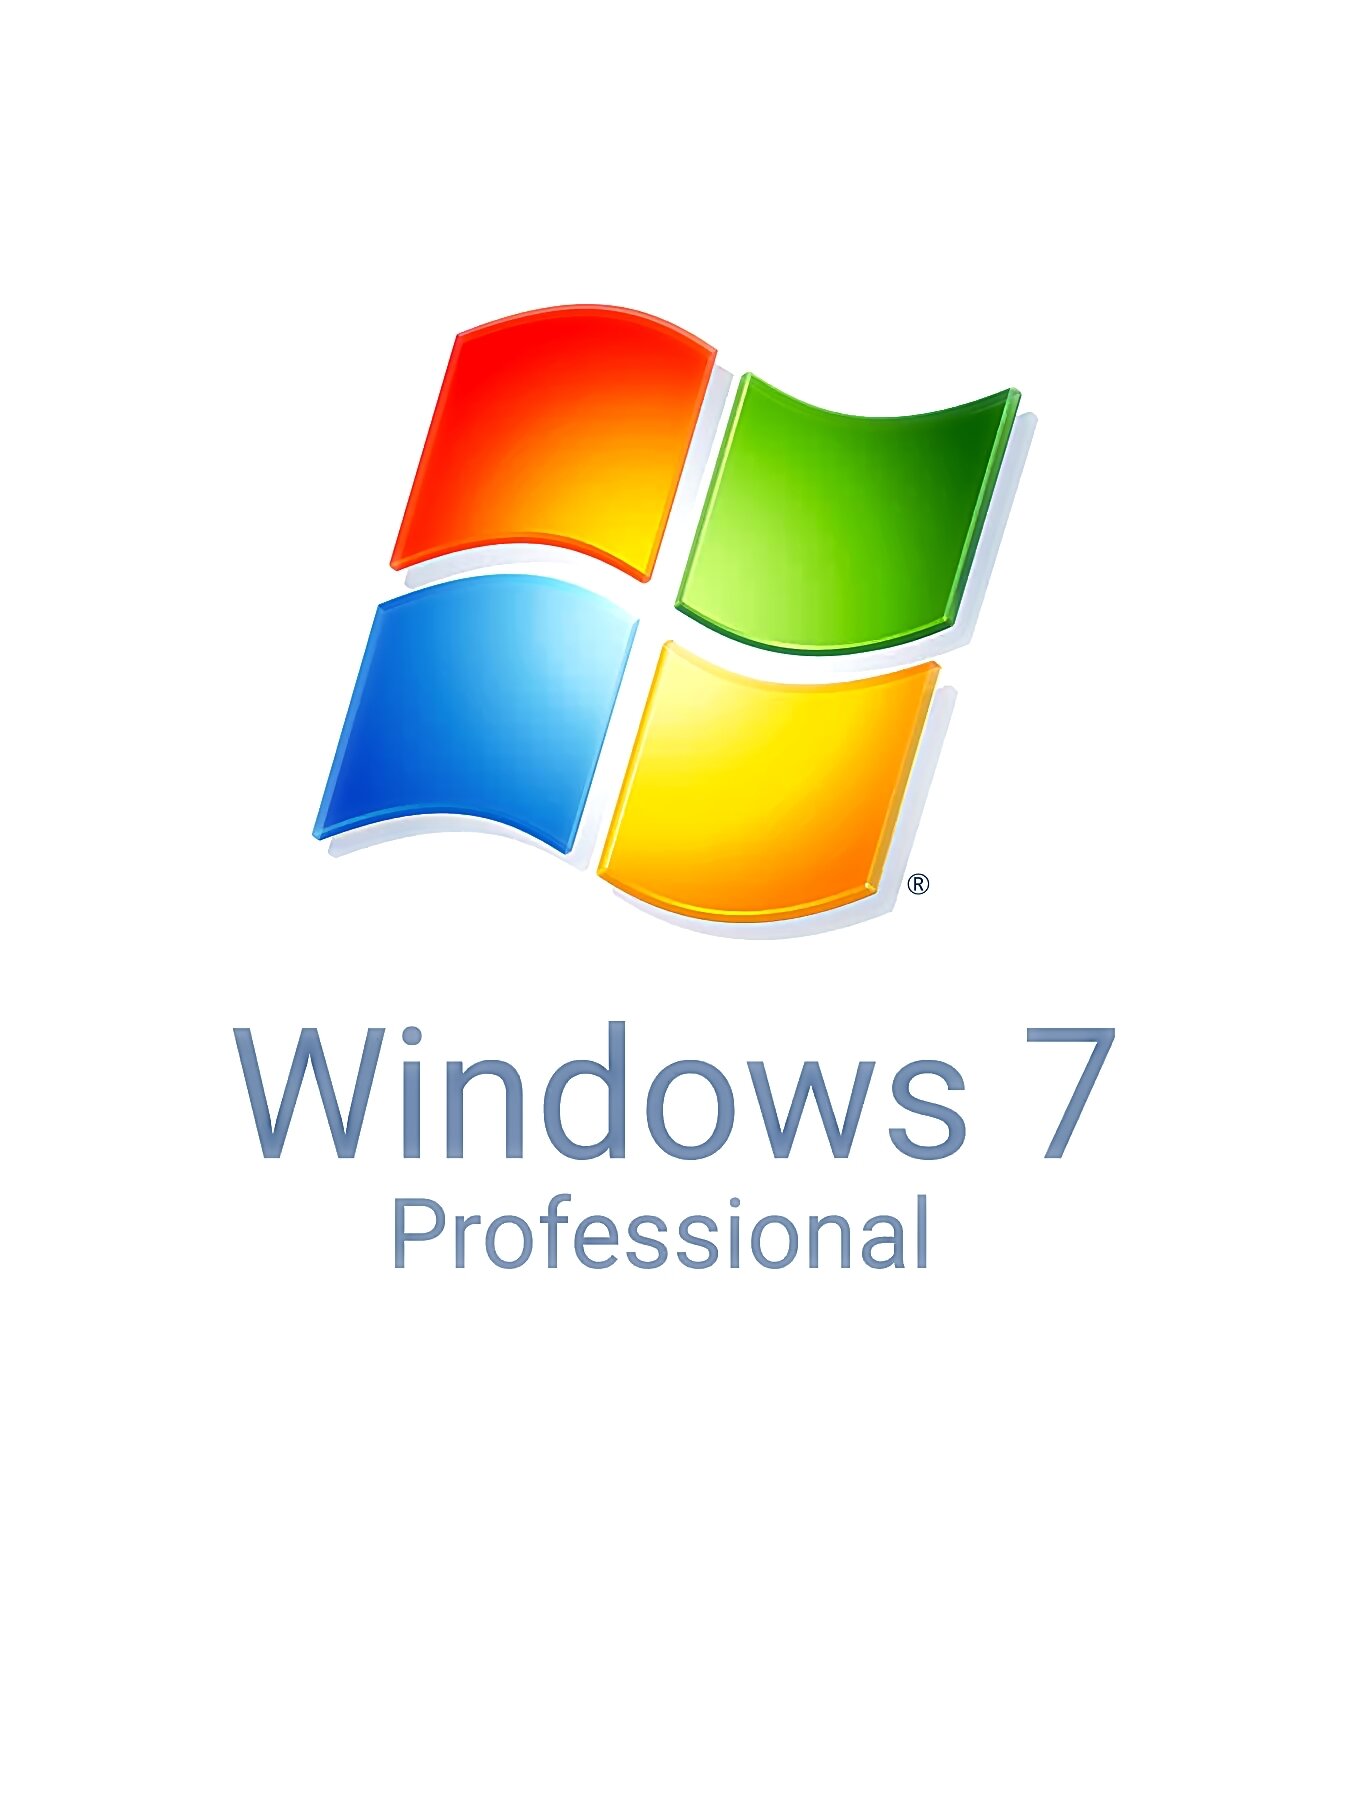 Windows 7 Professional (Профессиональная), Бессрочный лицензионный онлайн ключ активации, русский язык